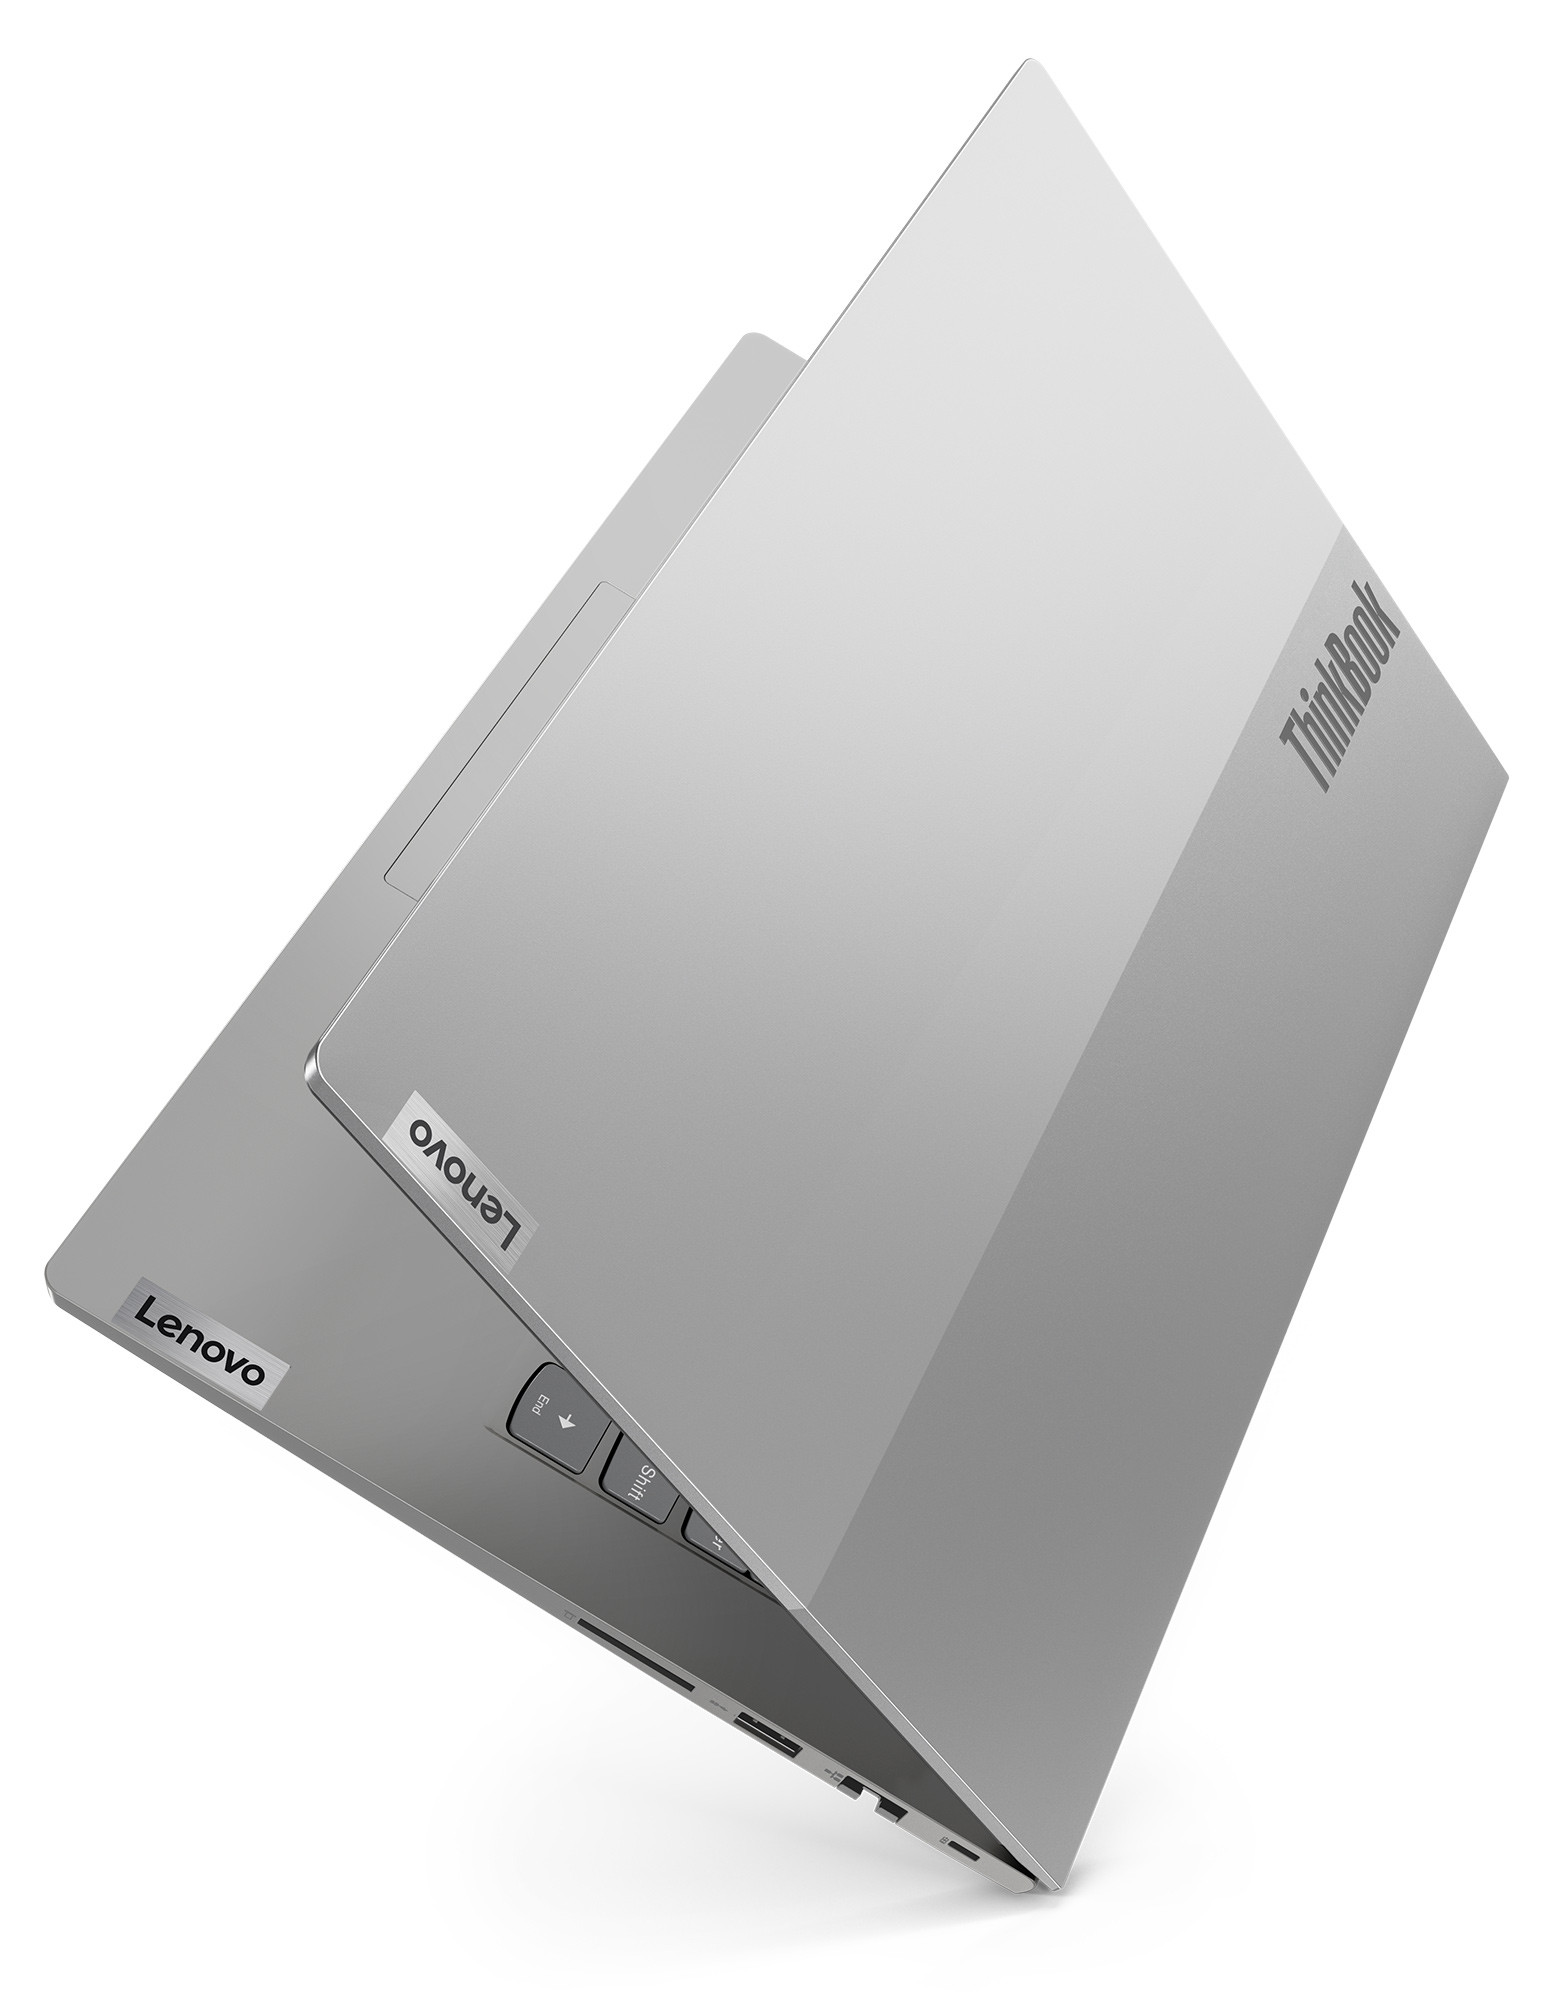 Lenovo mang tới lựa chọn mạnh mẽ và linh hoạt cho doanh nghiệp với bộ đôi ThinkBook mới phiên bản AMD